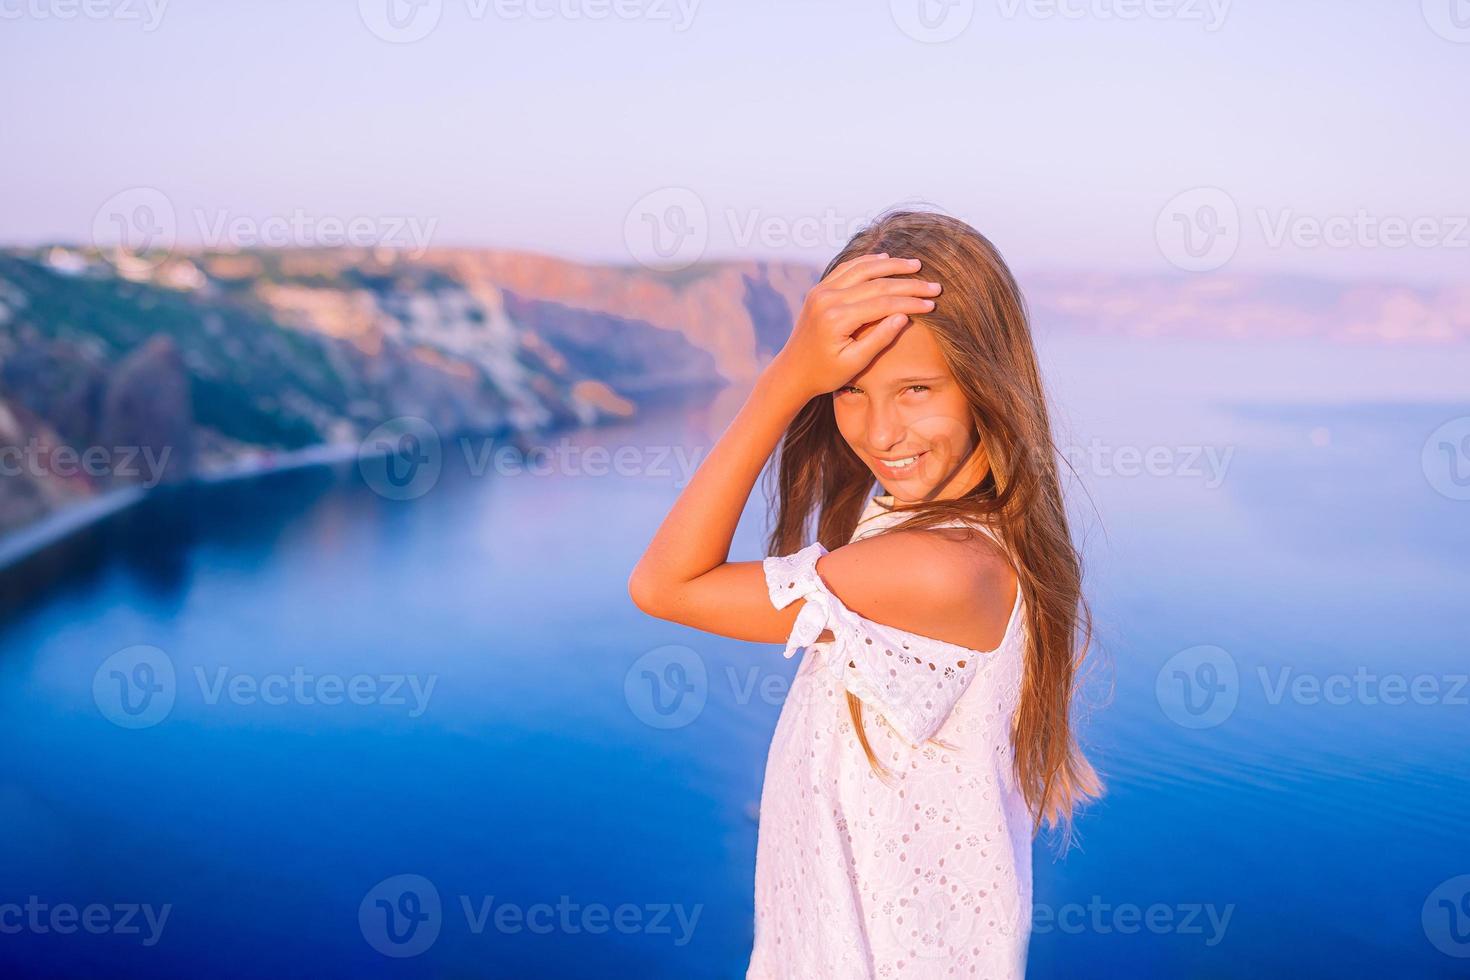 niña en la cima de una montaña disfrutando de la vista del valle antes del atardecer foto